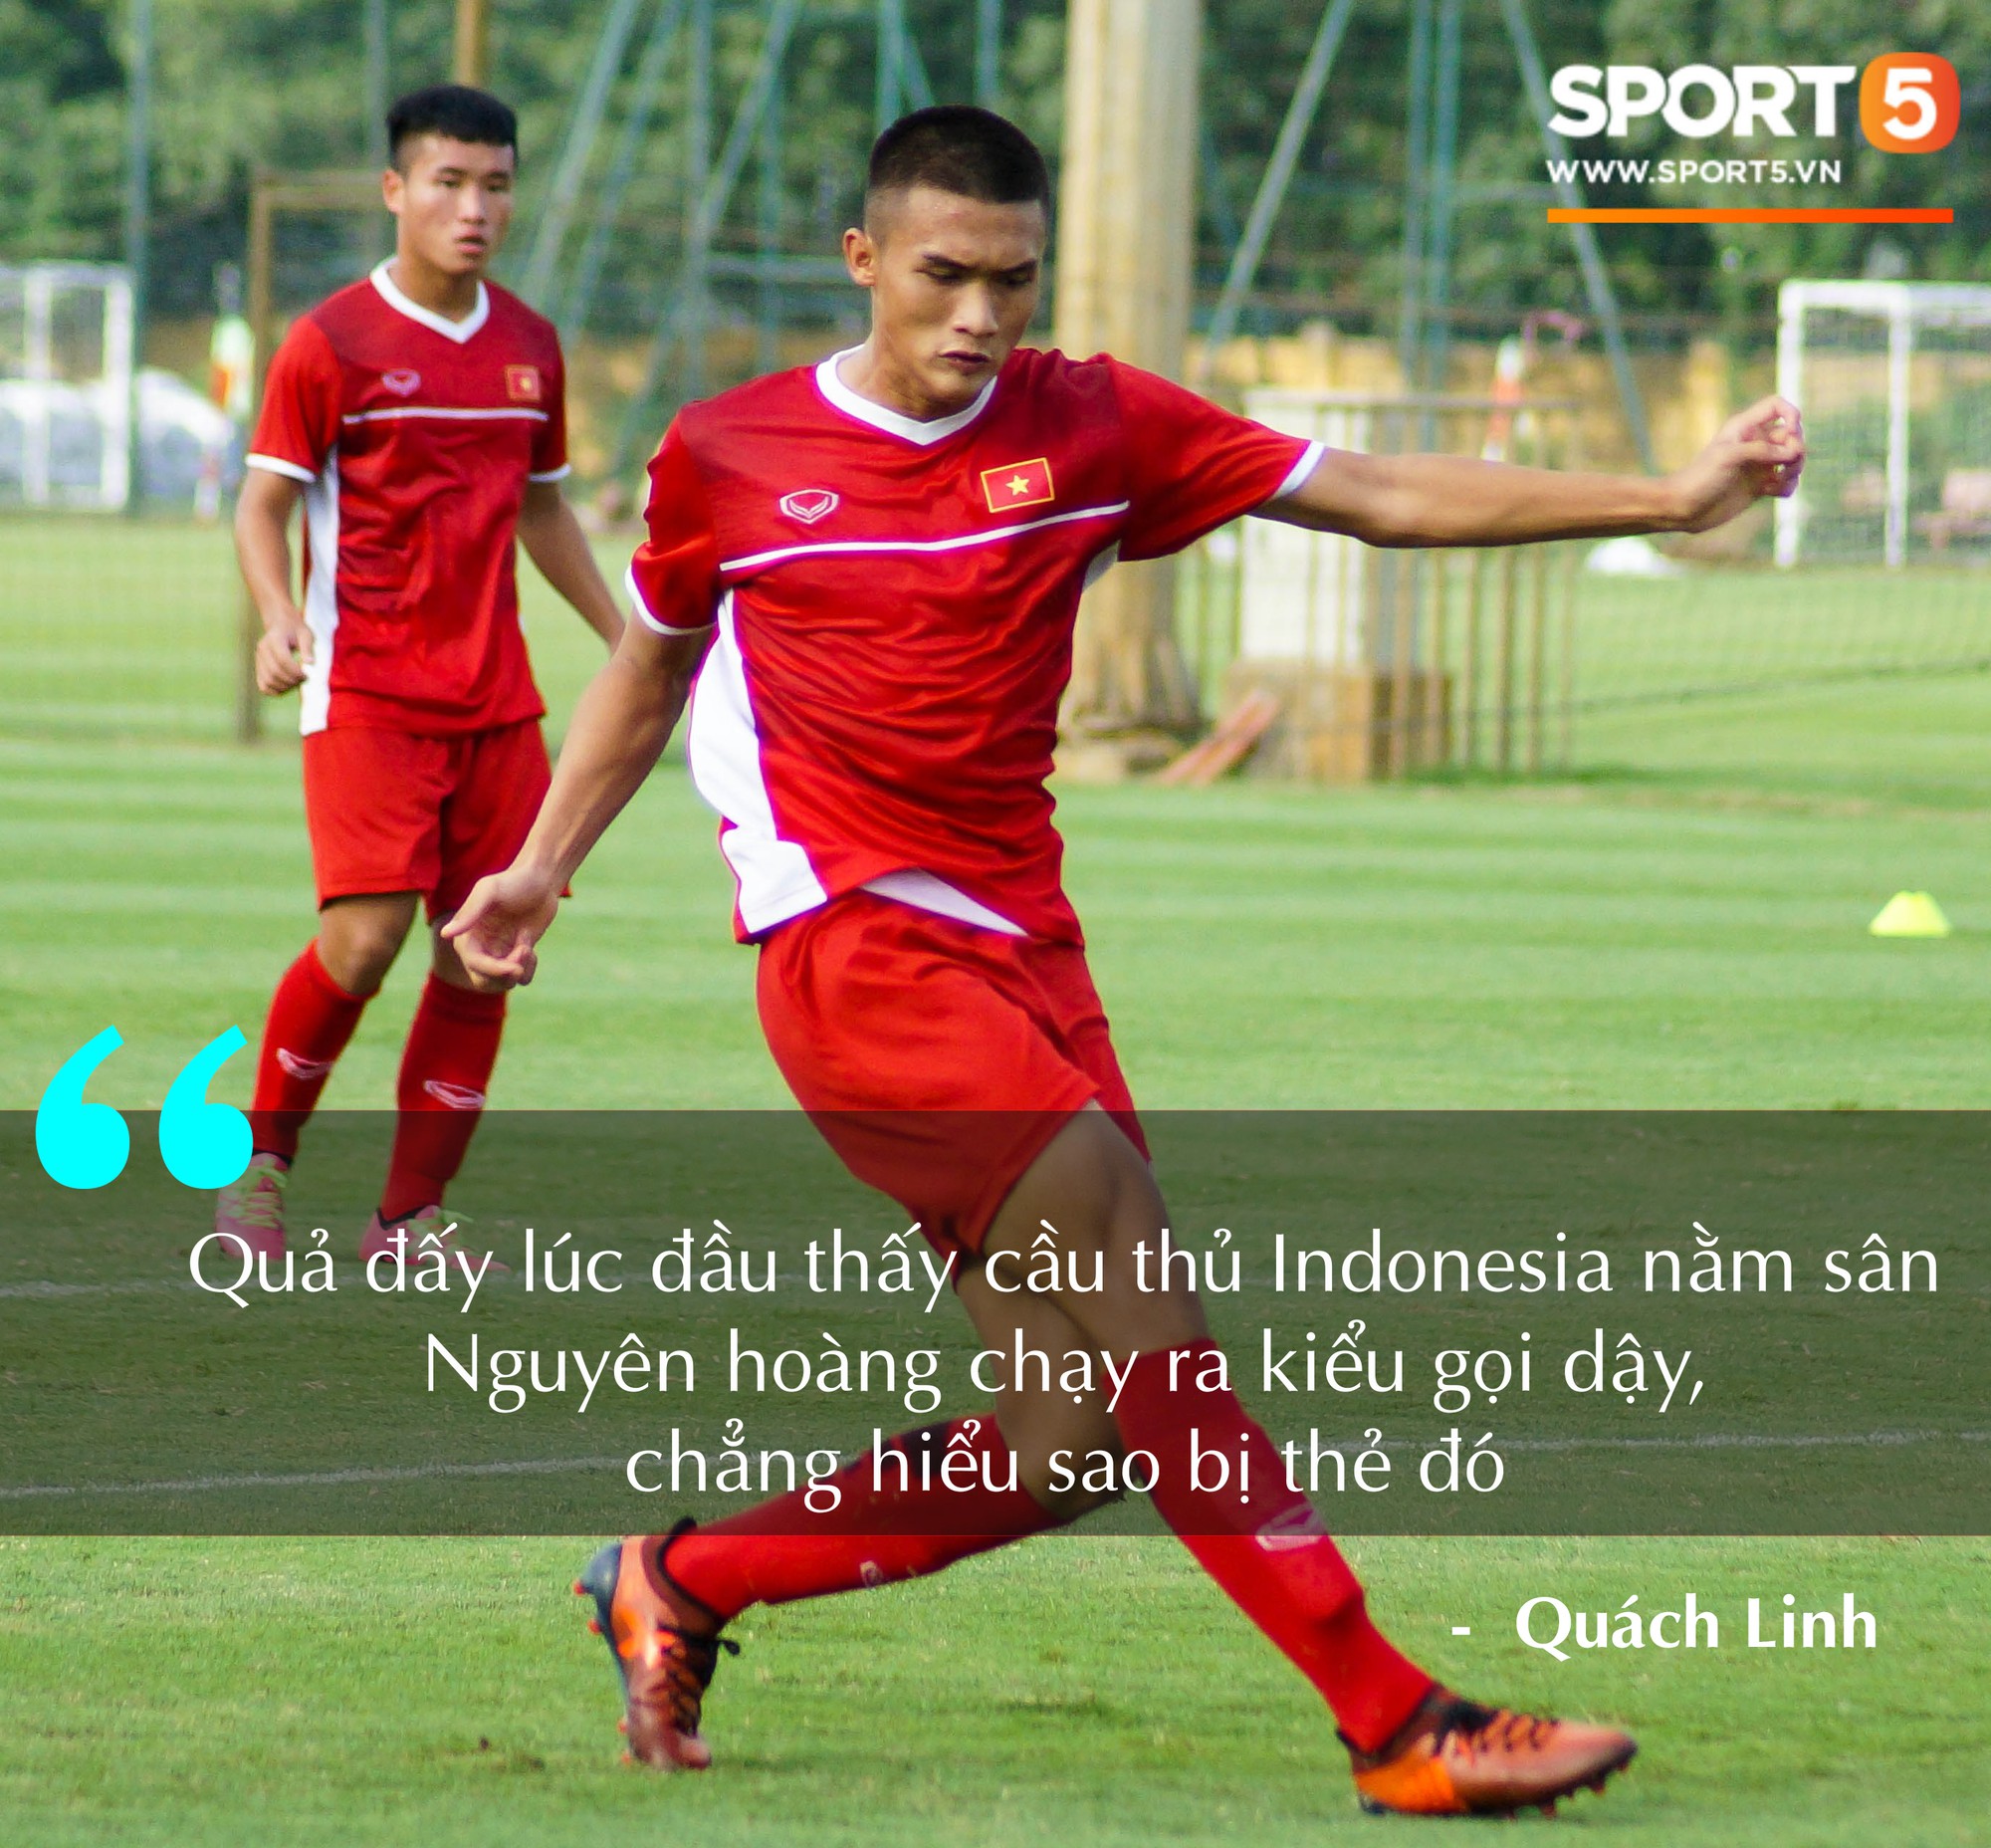 Thua ngược U16 Indonesia, U16 Việt Nam vẫn được người hâm mộ ủng hộ - Ảnh 3.